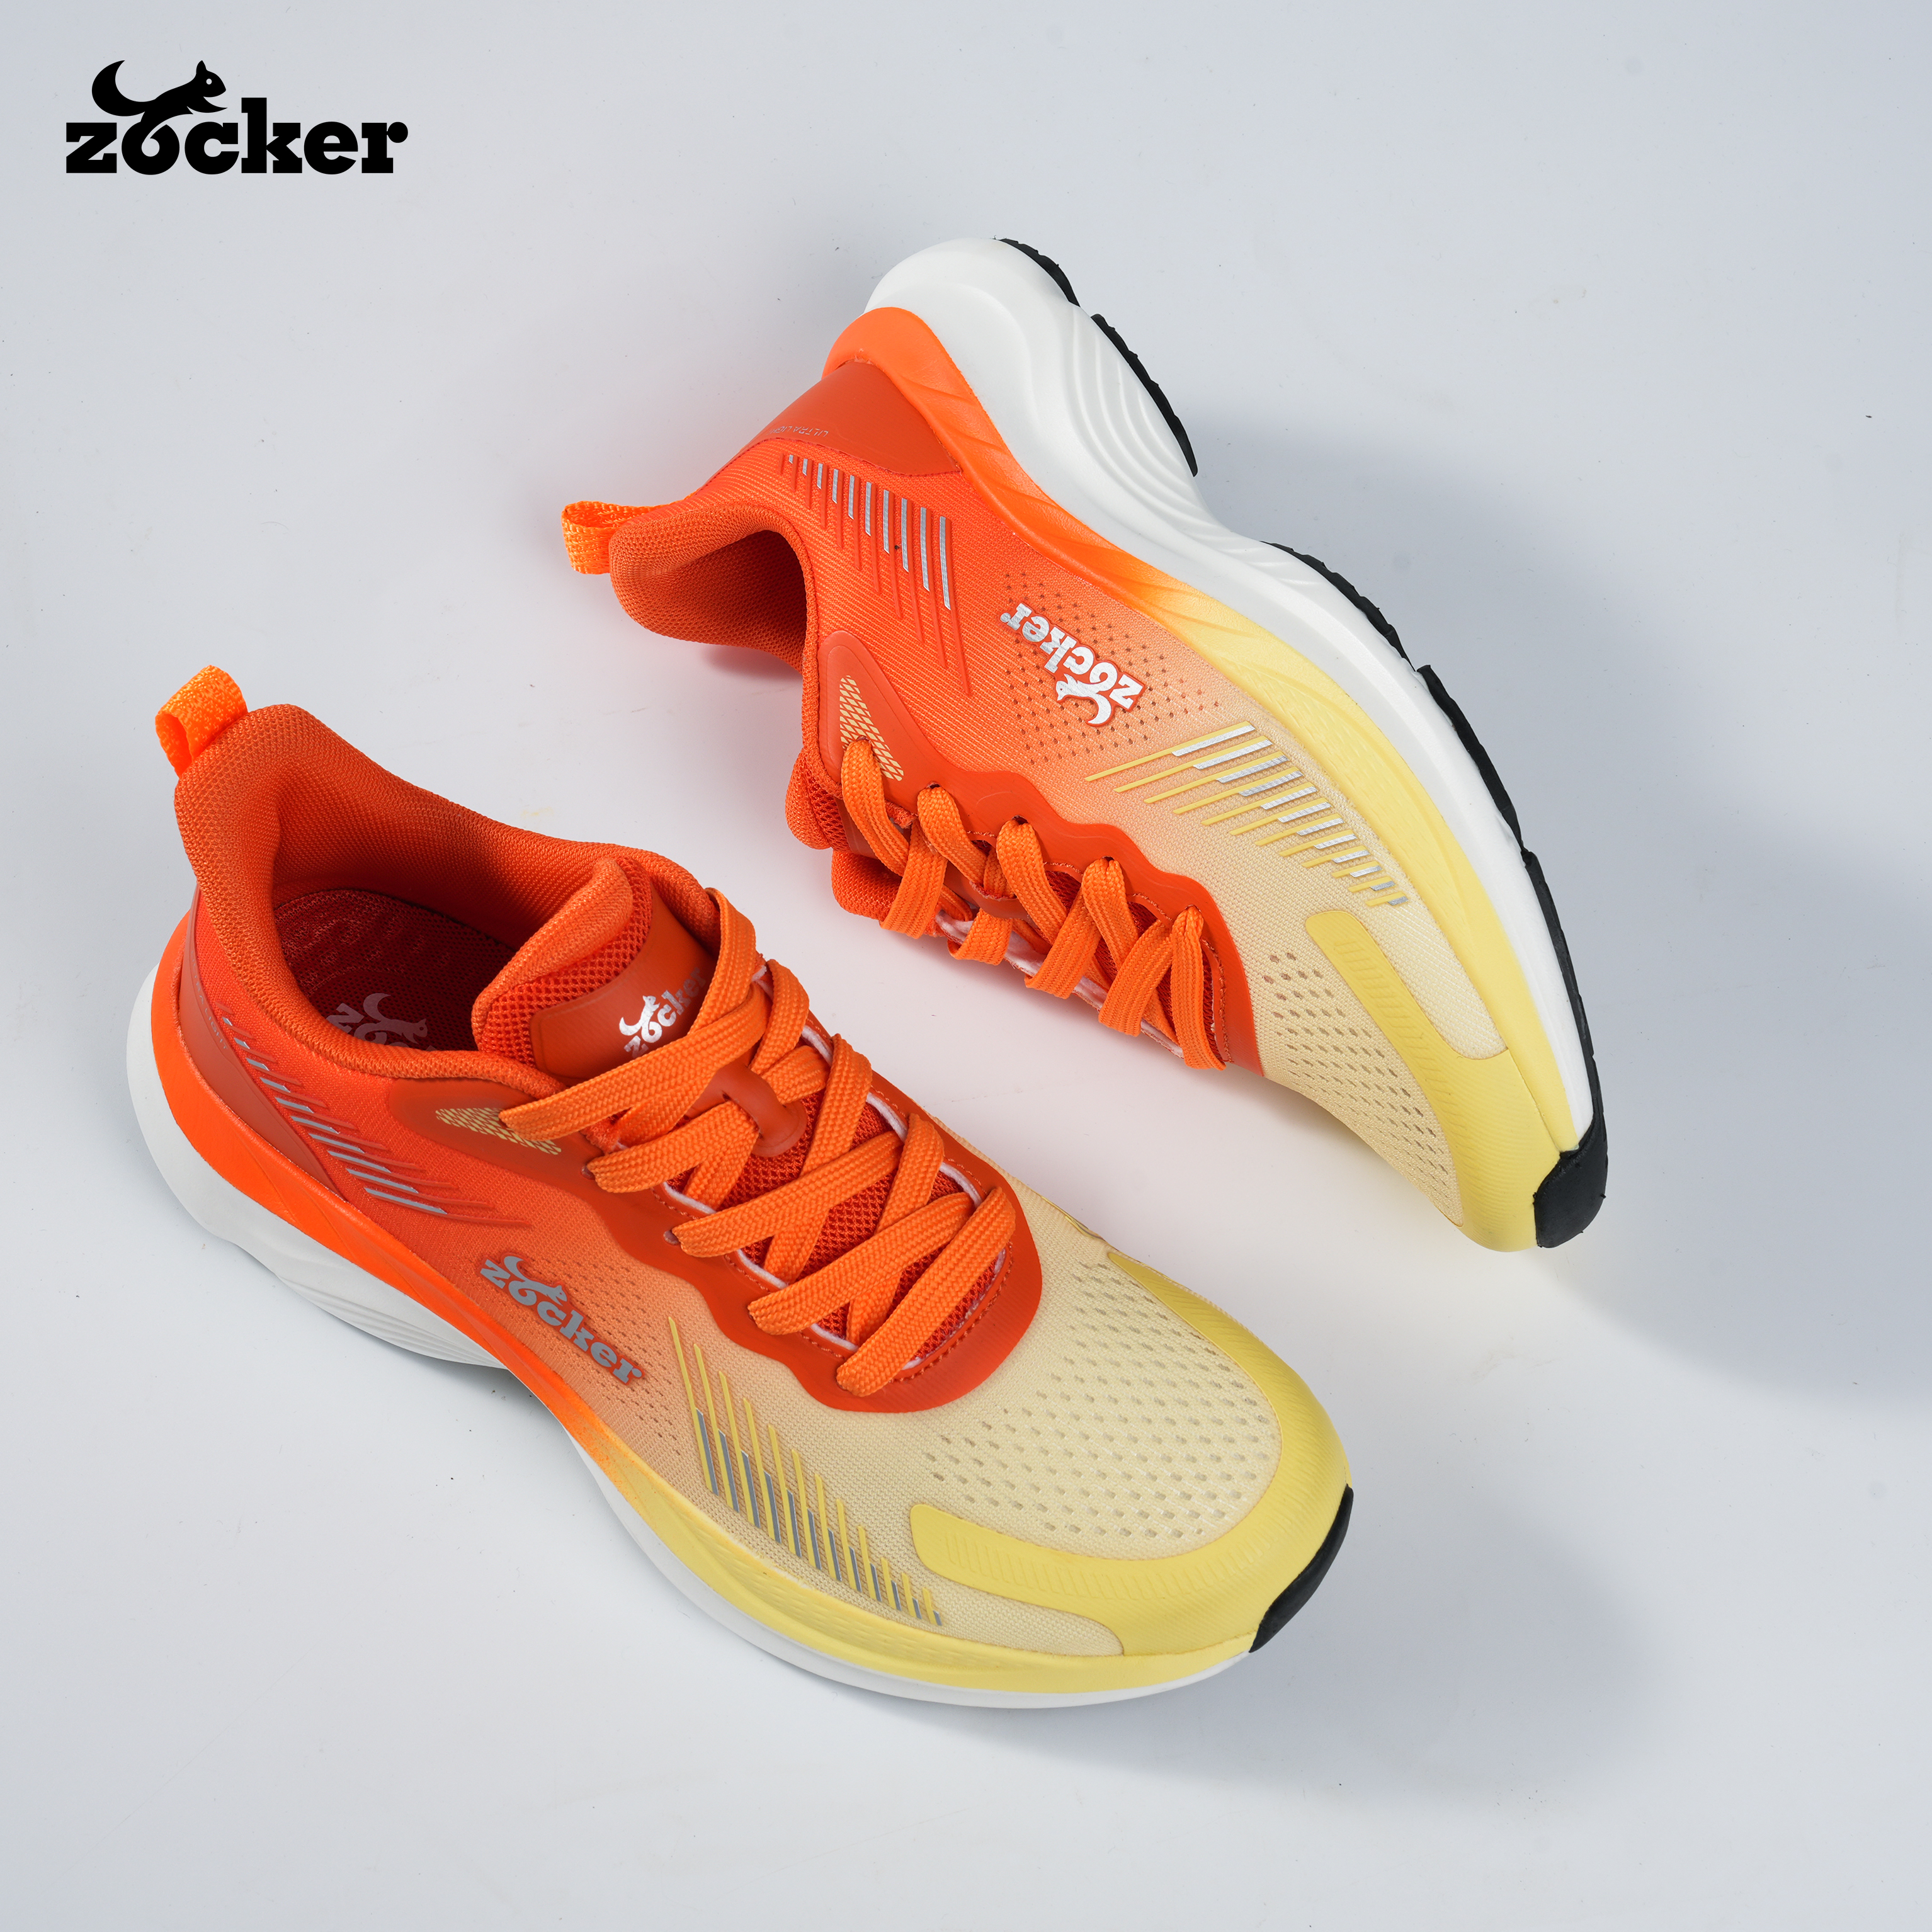 Giày Chạy Bộ Zocker Ultra Light Pale Yellow/Orange - Công Nghệ Light Foam Premium Siêu Nhẹ - Siêu Êm - Siêu Nảy - Tặng kèm vệ sinh giày